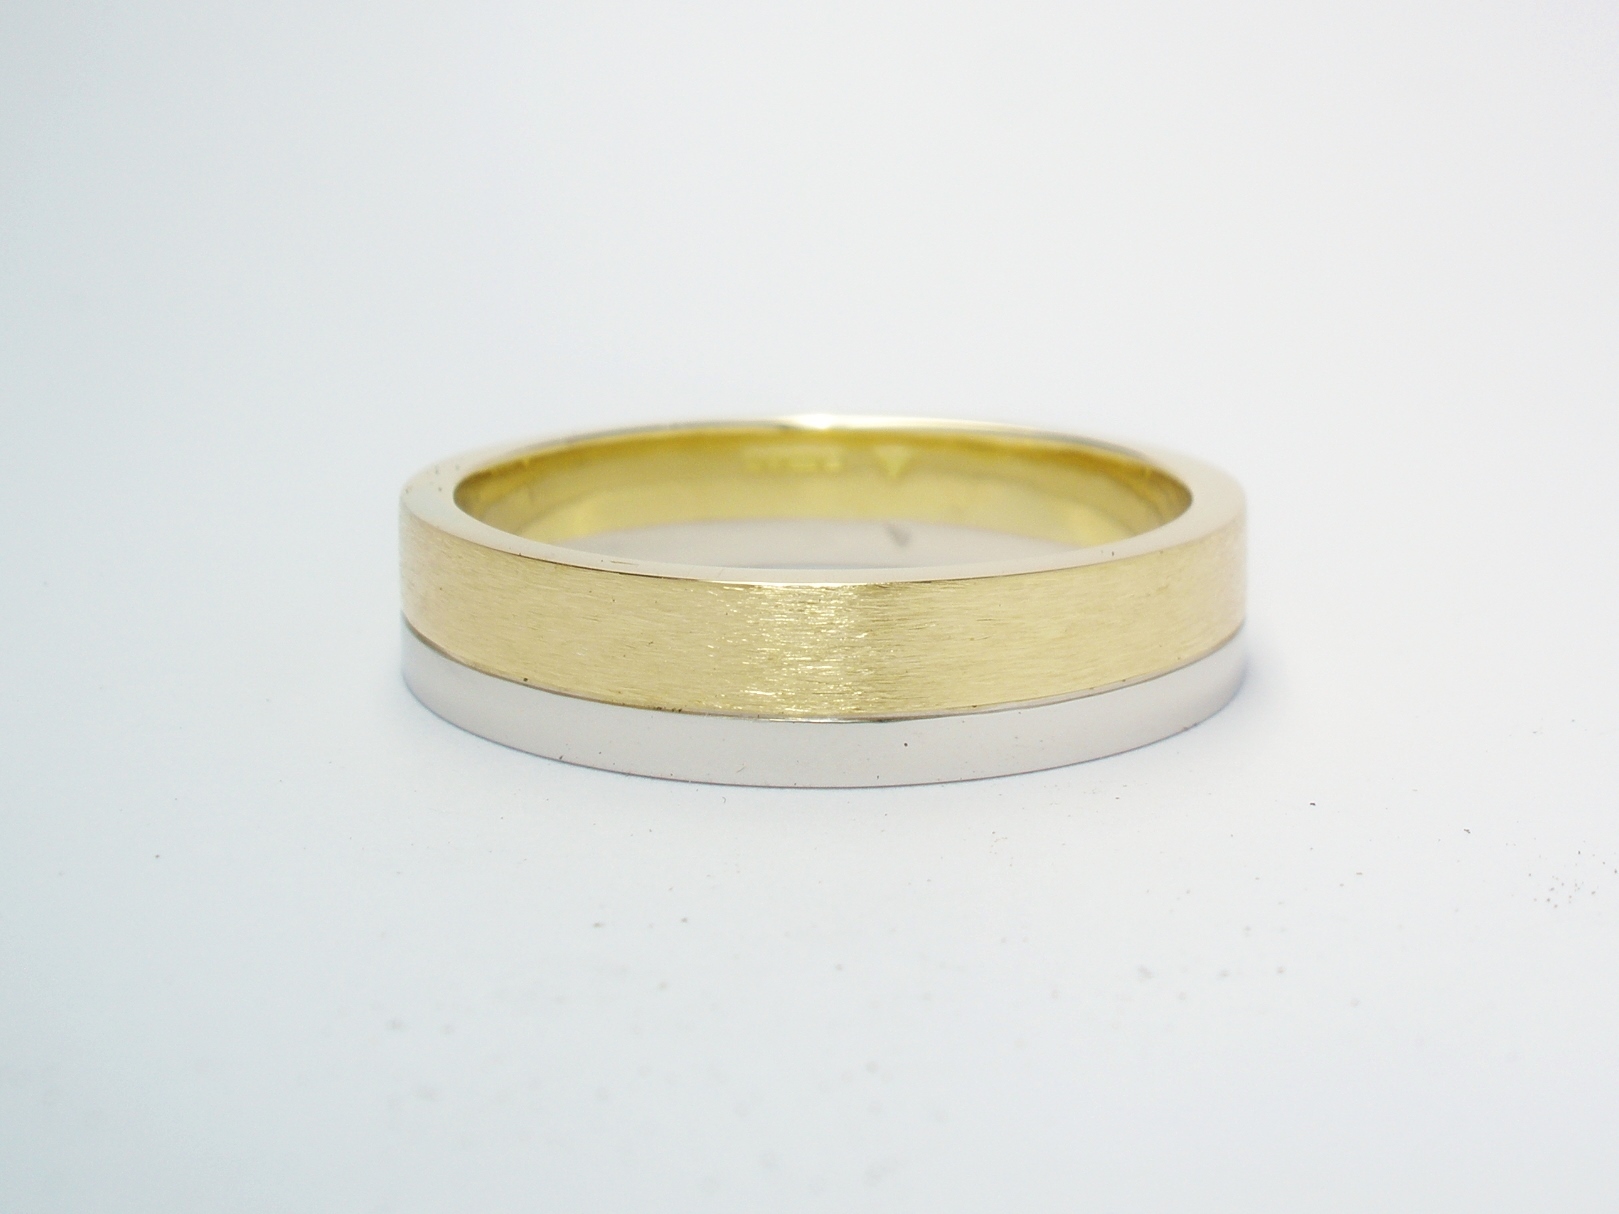 A brushed finish 18ct. yellow gold & polish finished platinum gents wedding ring.